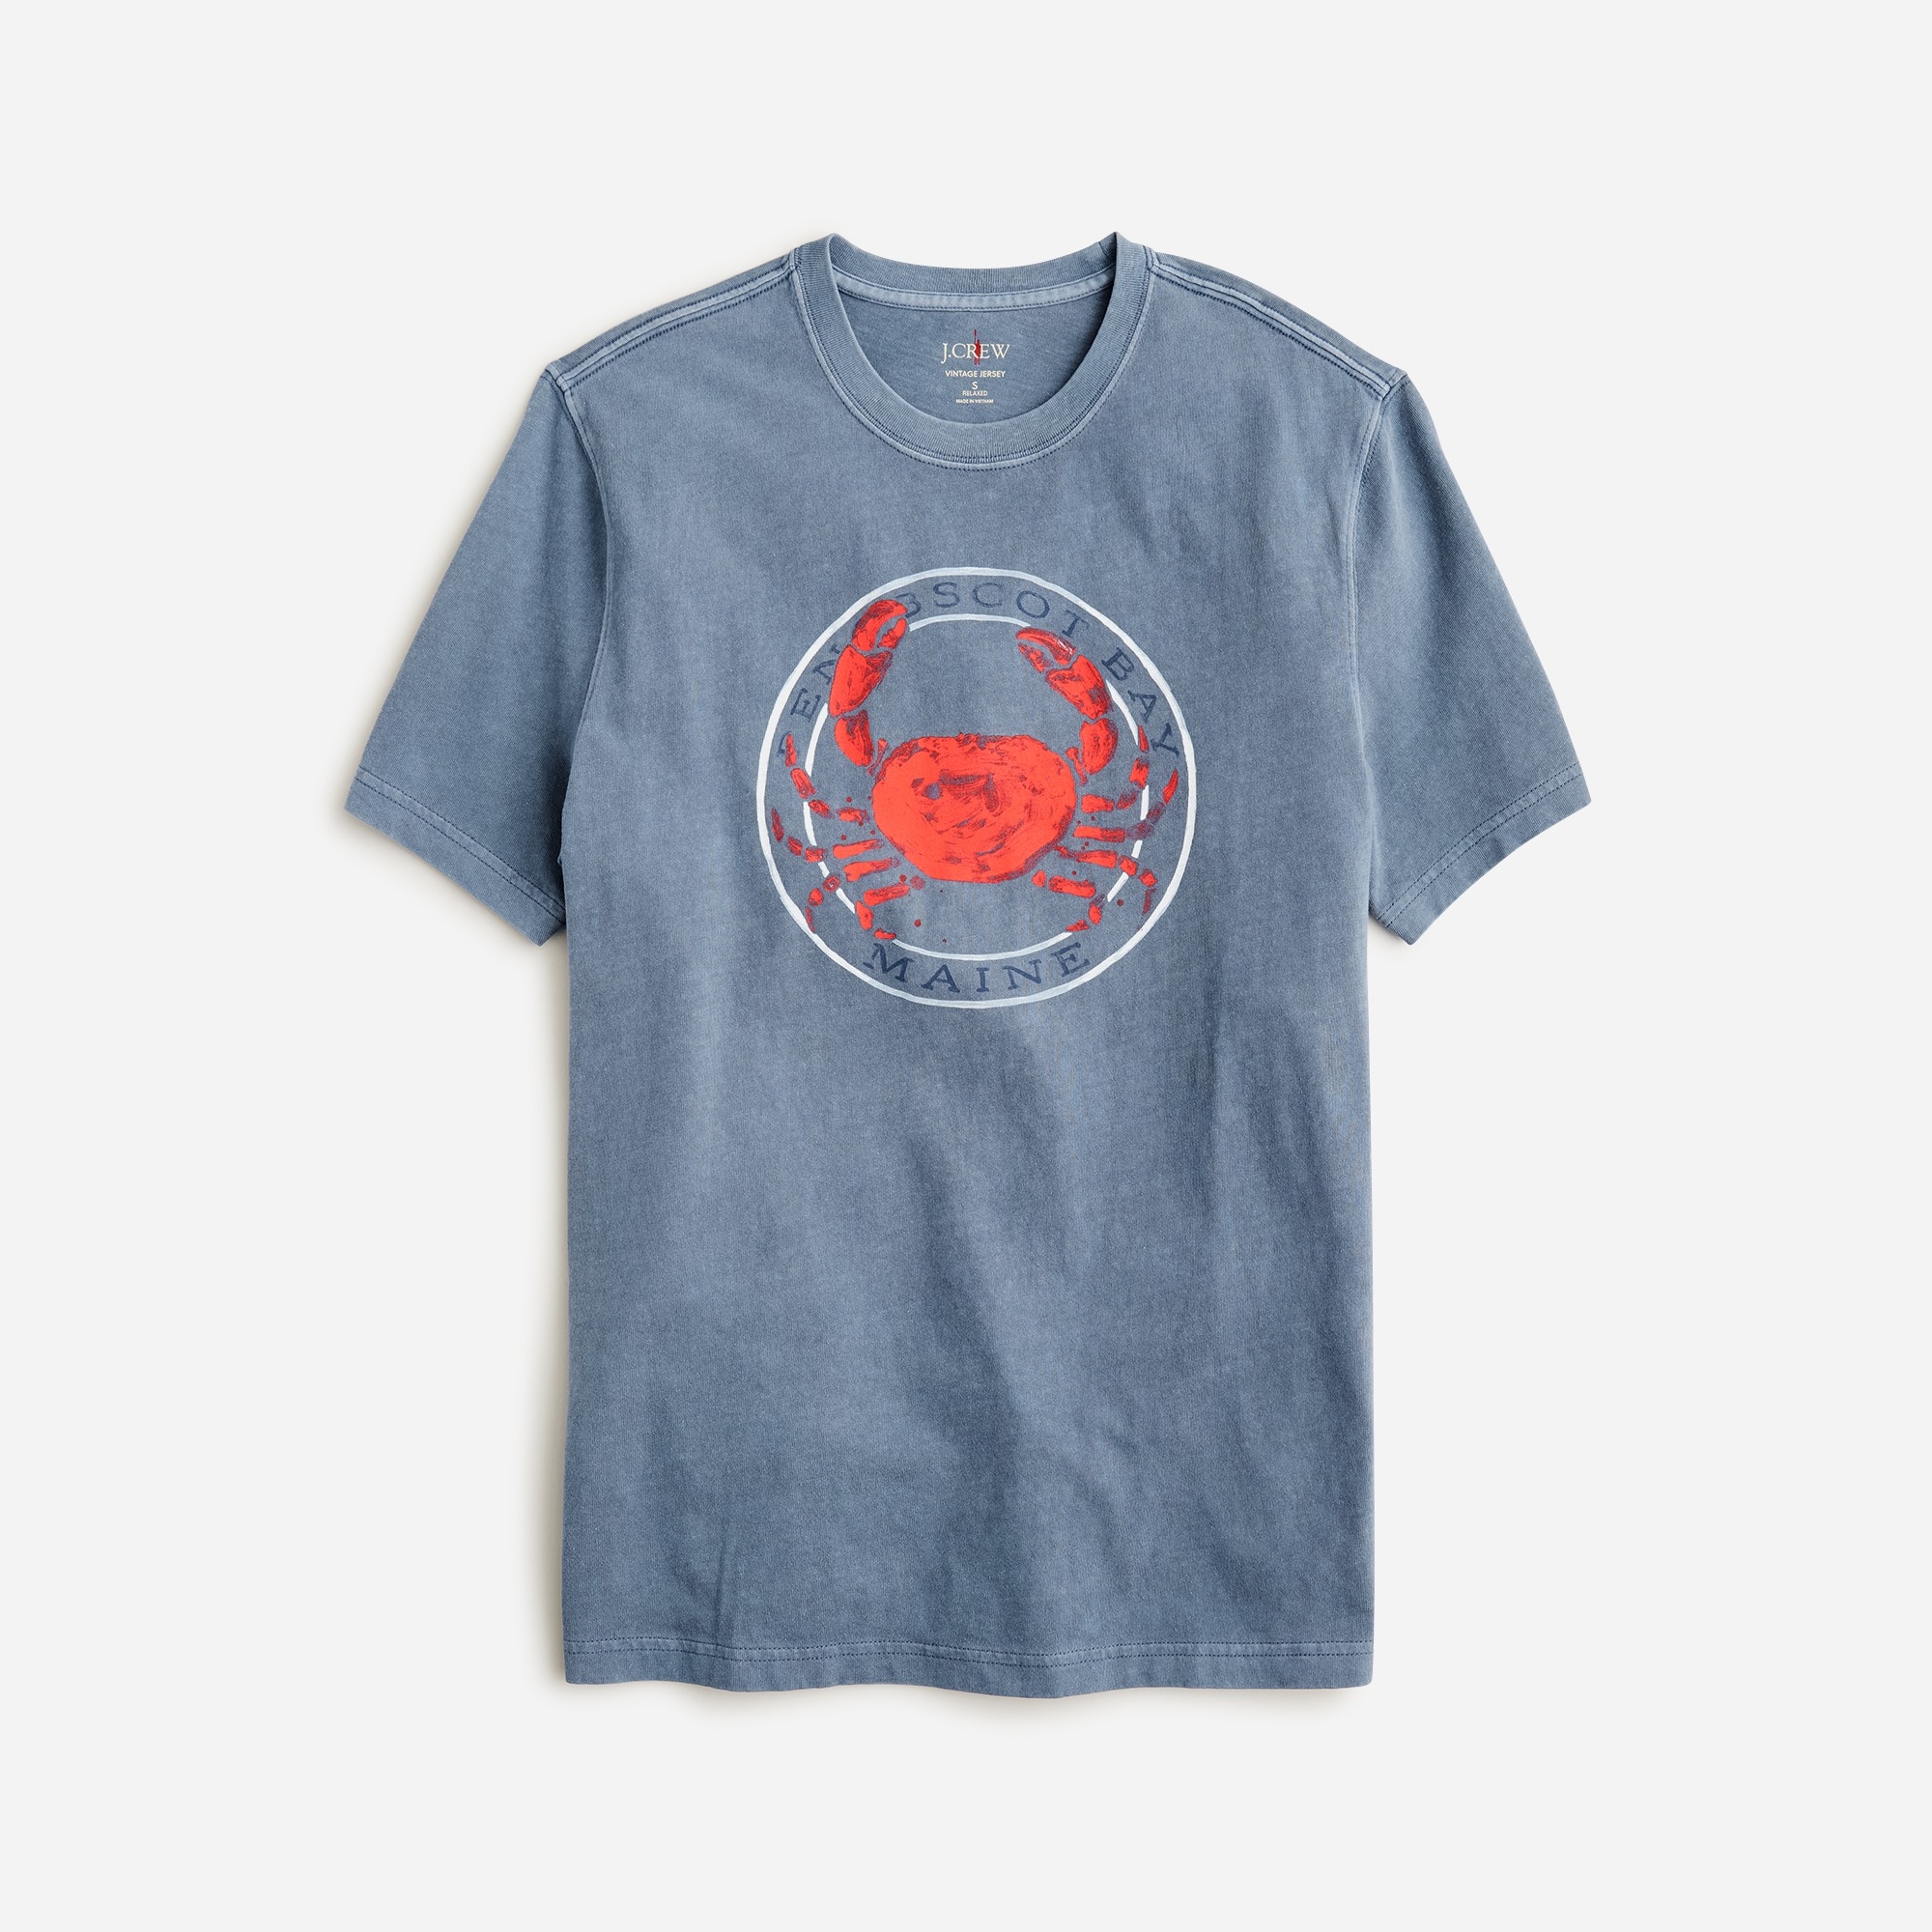 Jcrew Vintage-wash cotton crab graphic T-shirt